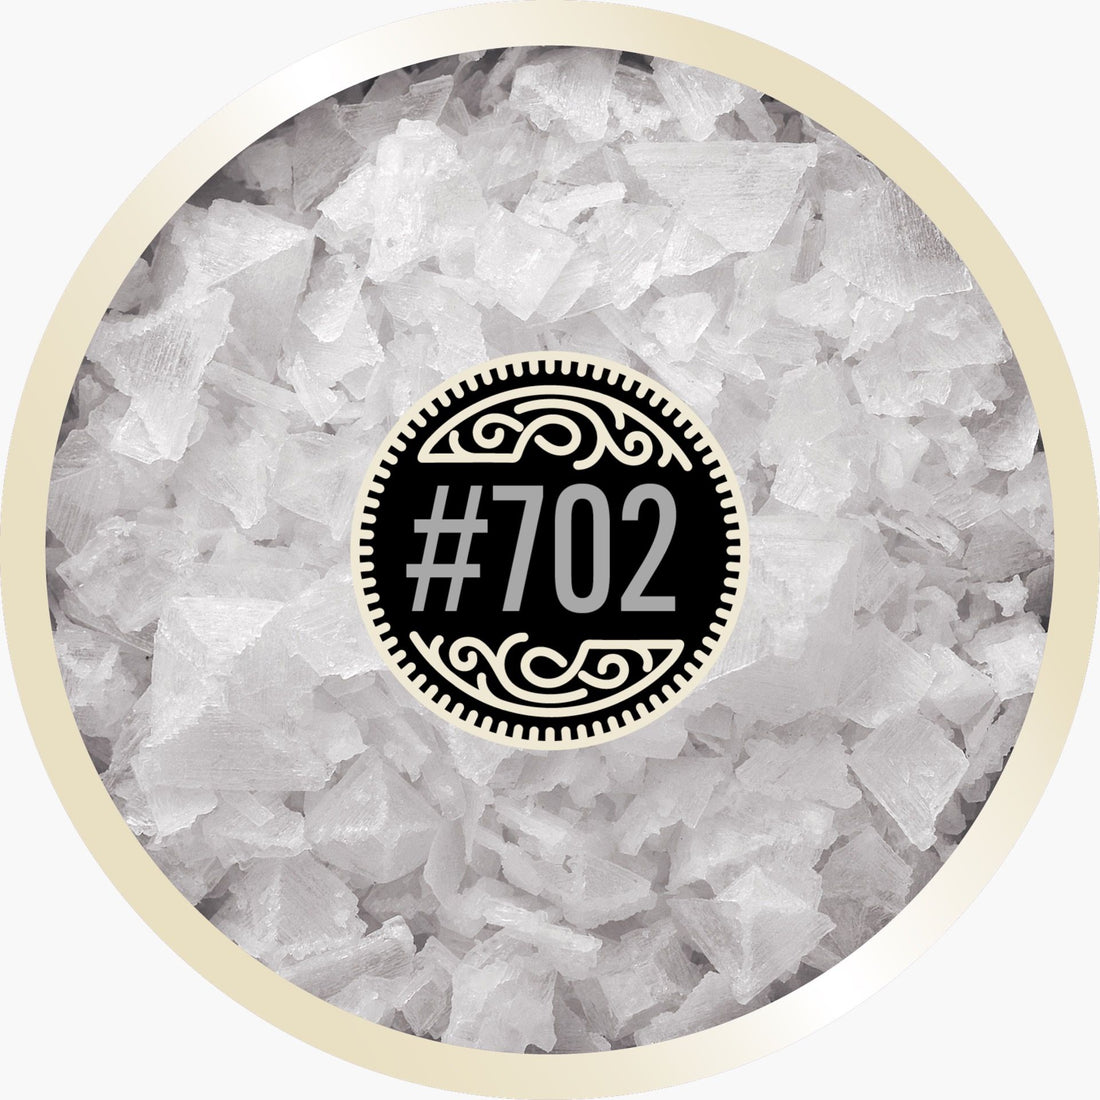 Salt Flakes #702